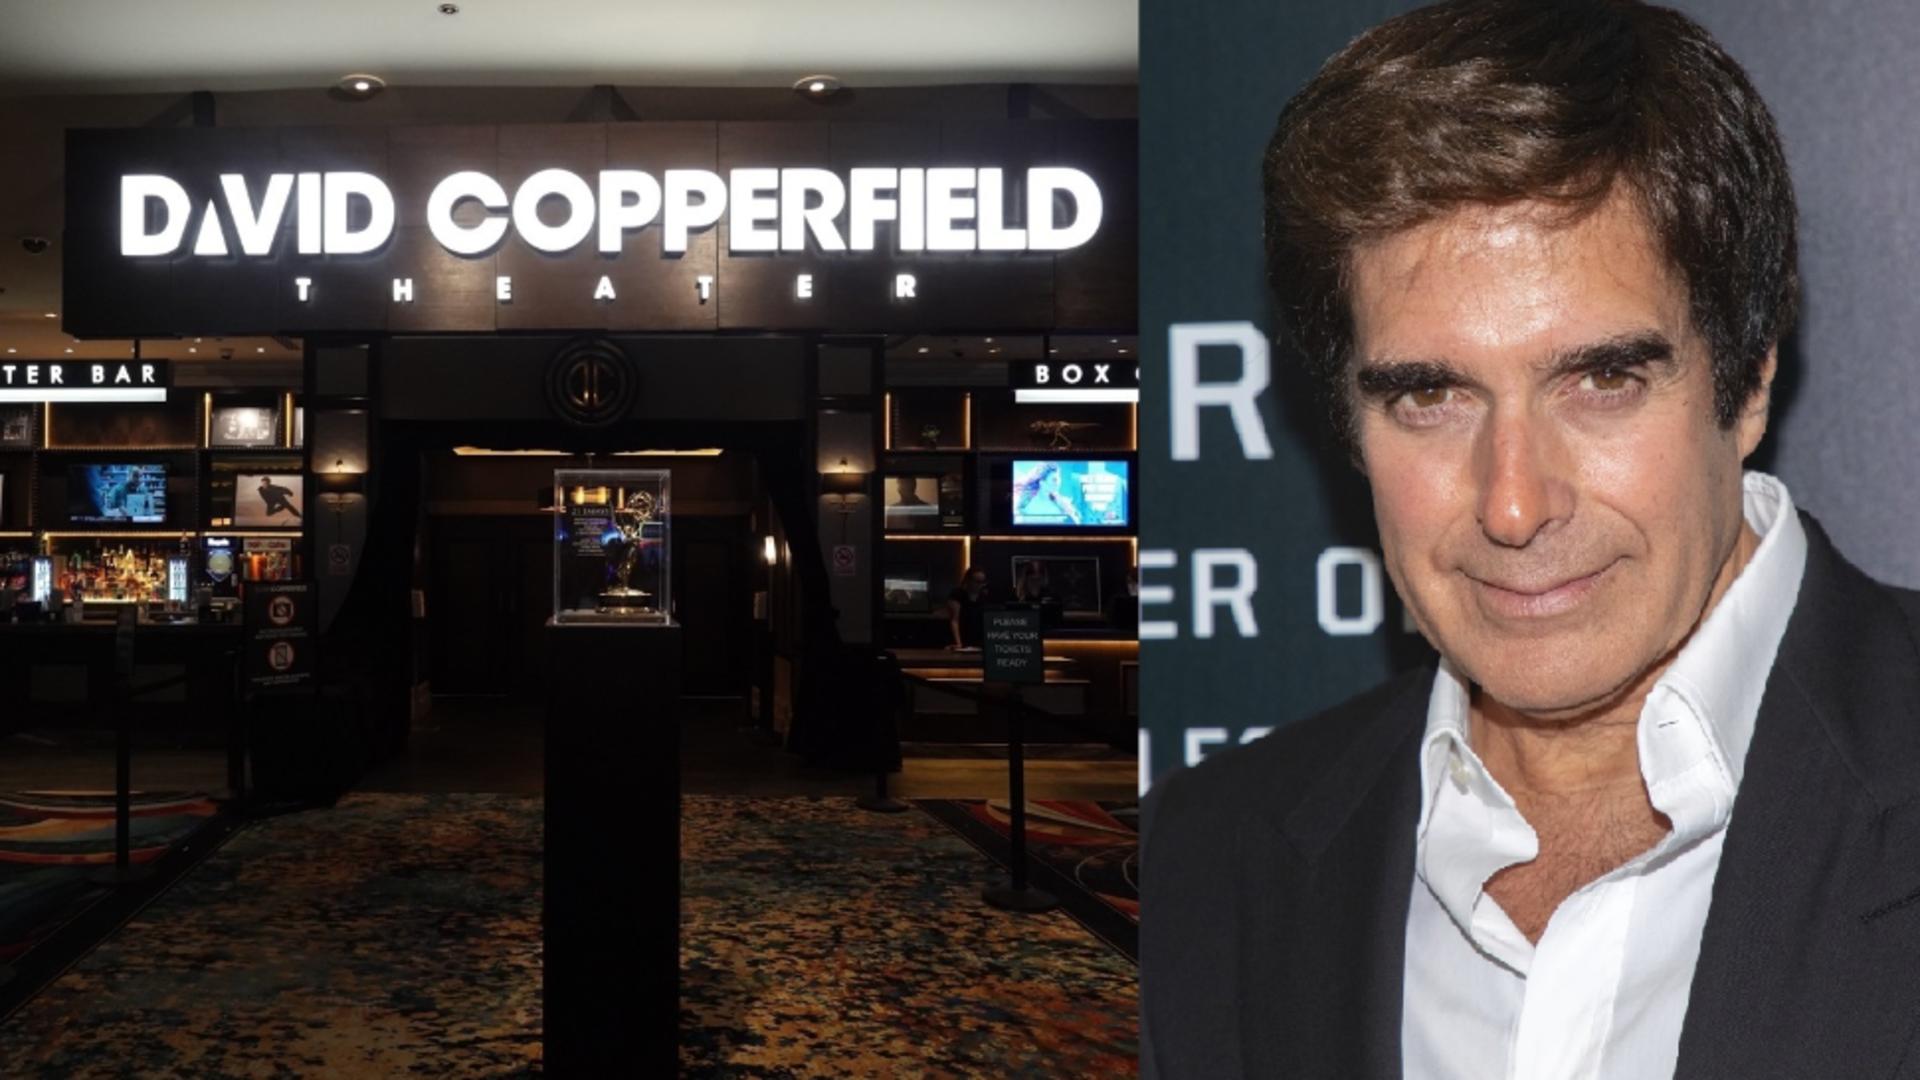 Legendarul magician David Copperfield este acuzat de violenţă sexuală de mai multe femei